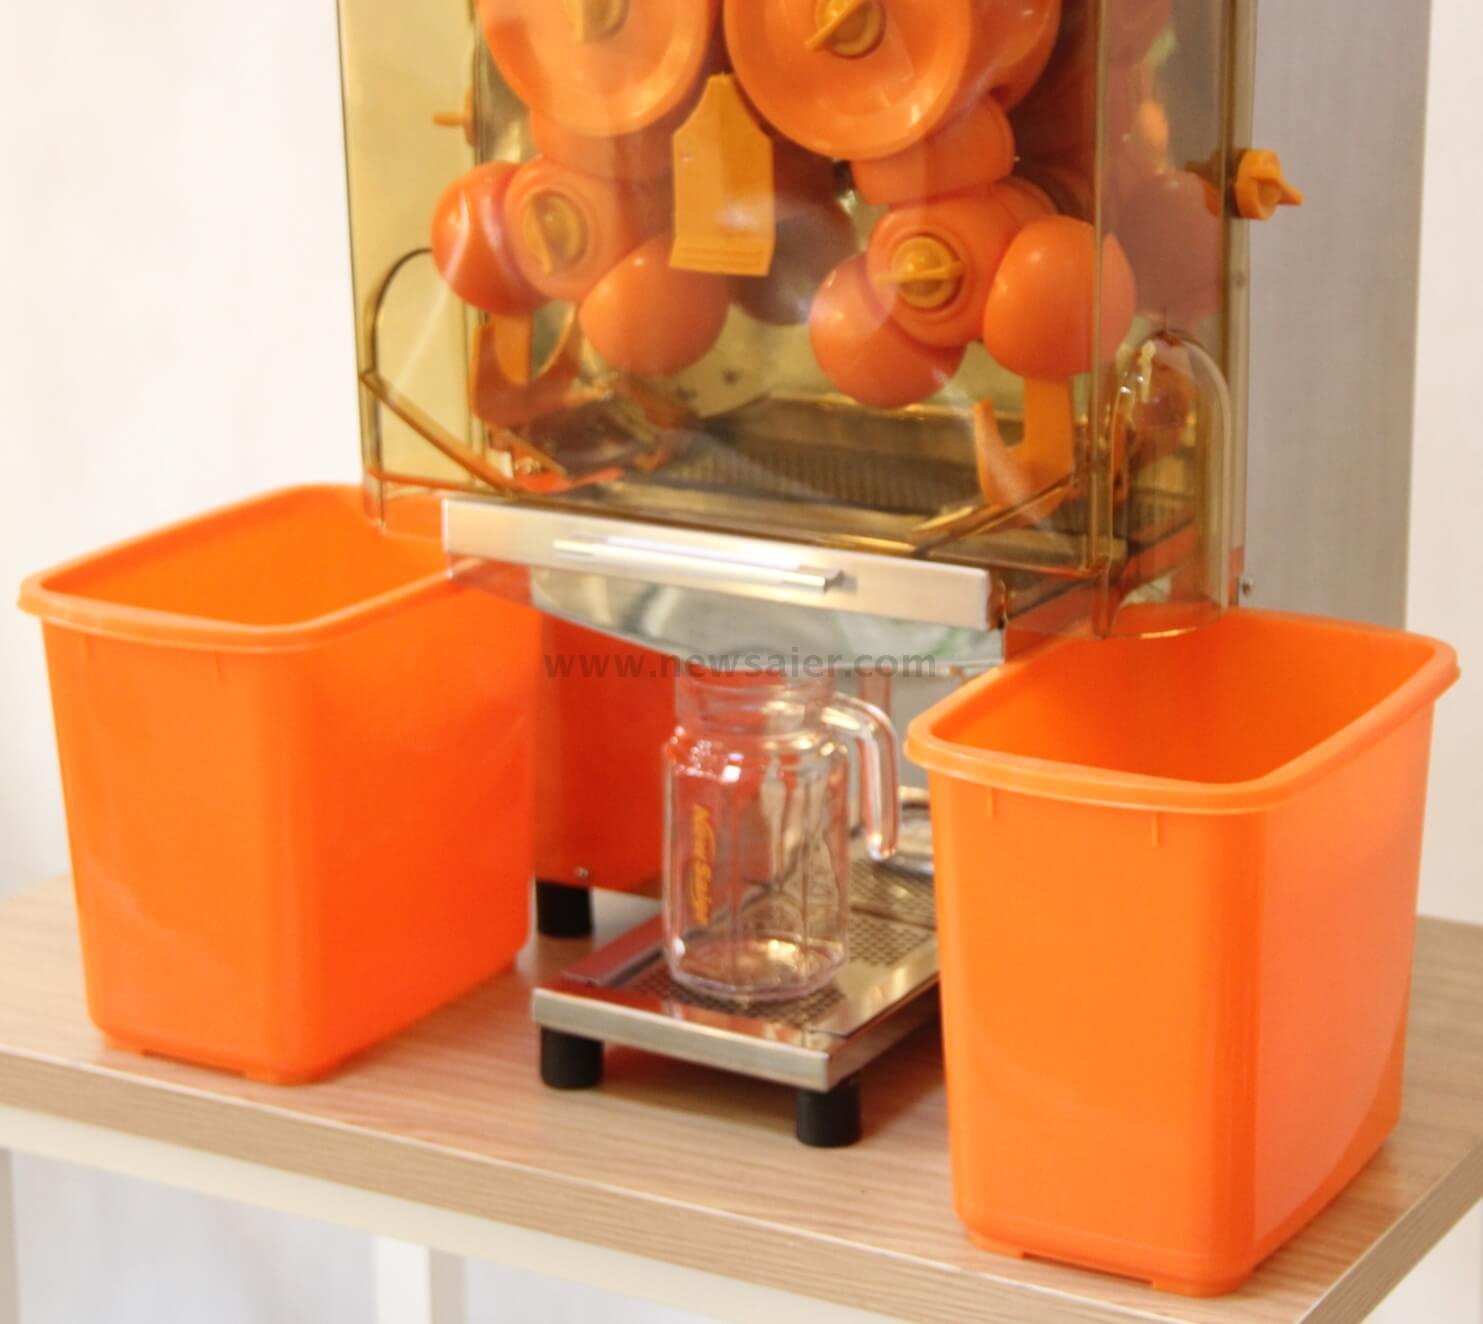 2000E-4 Electric Commercial Orange Juicer Machine Citrus Squeezer Orange Juicer 